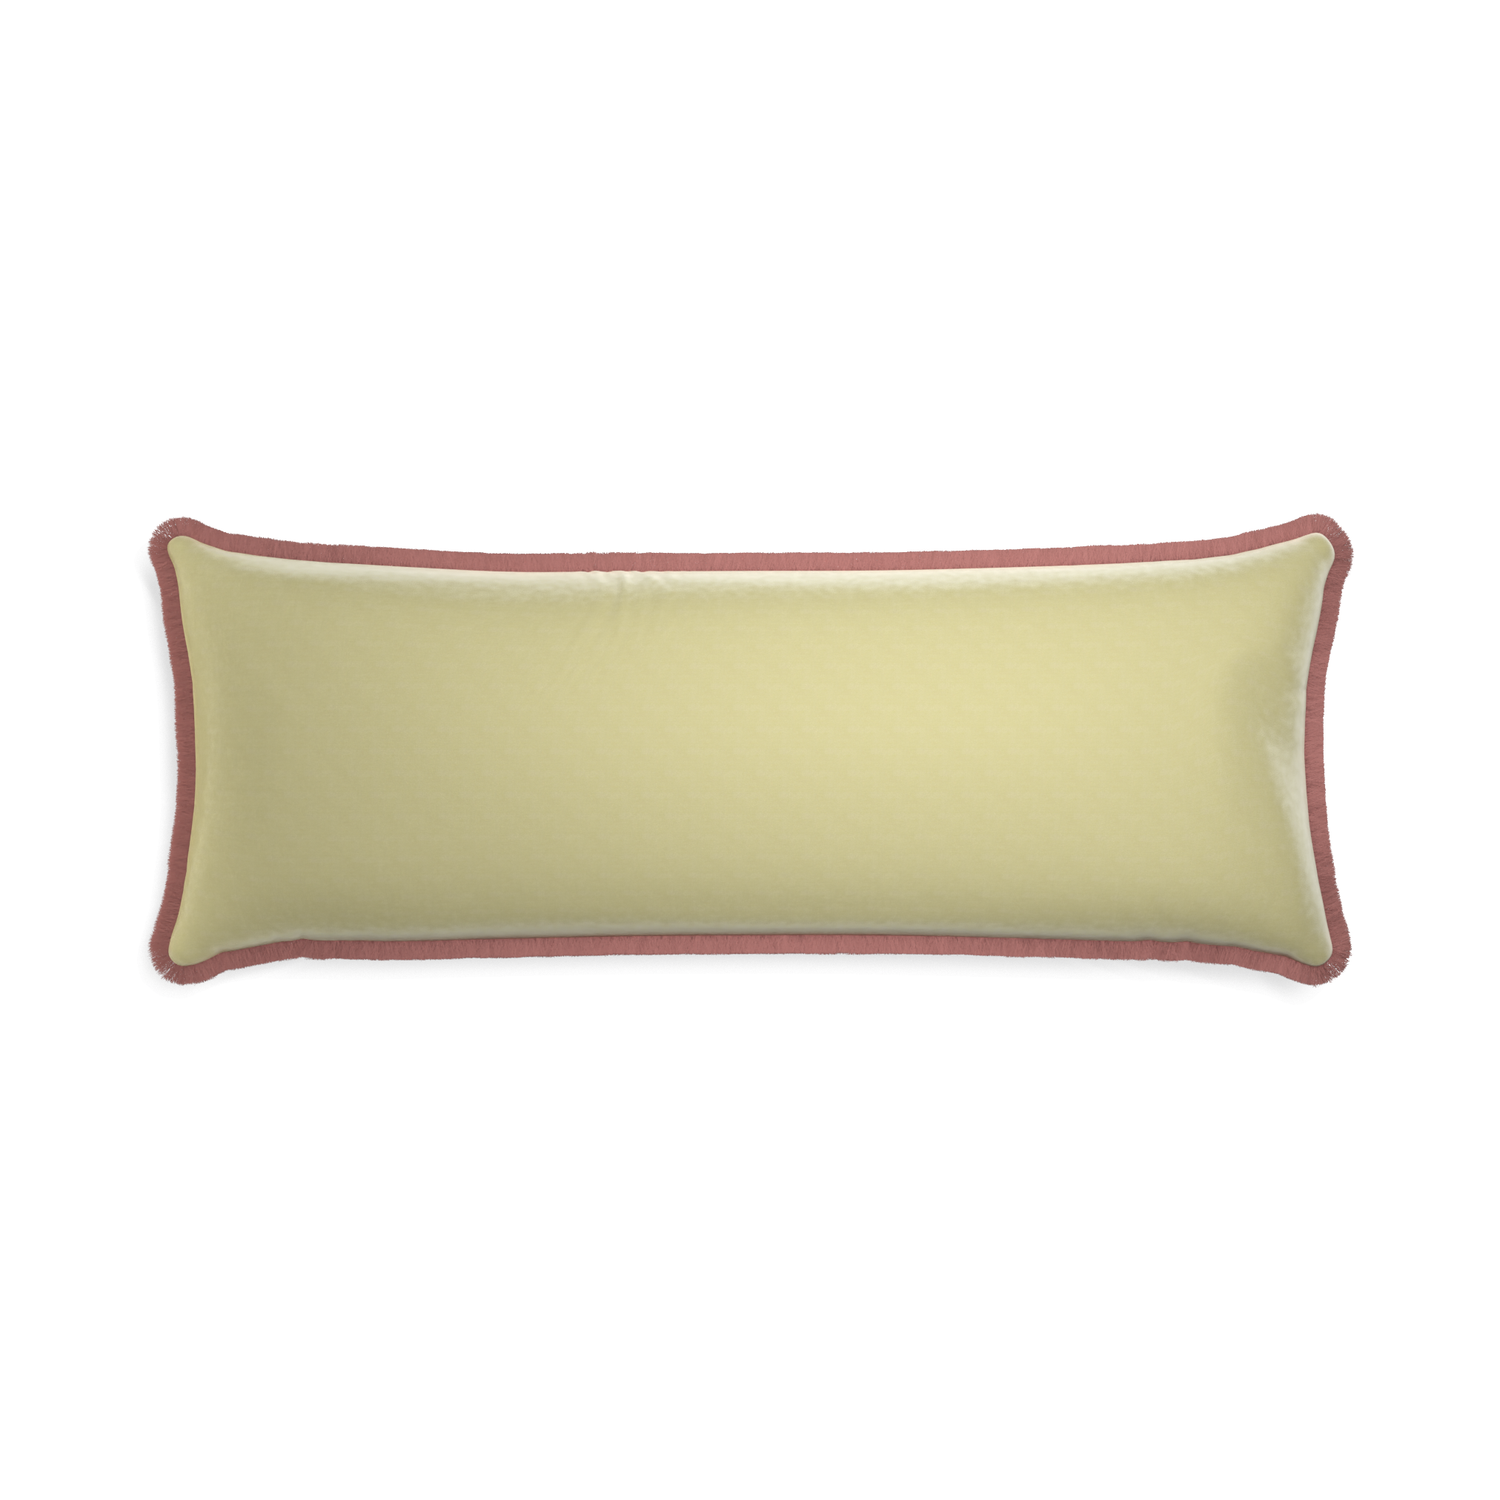 Xl-lumbar pear velvet custom pillow with d fringe on white background